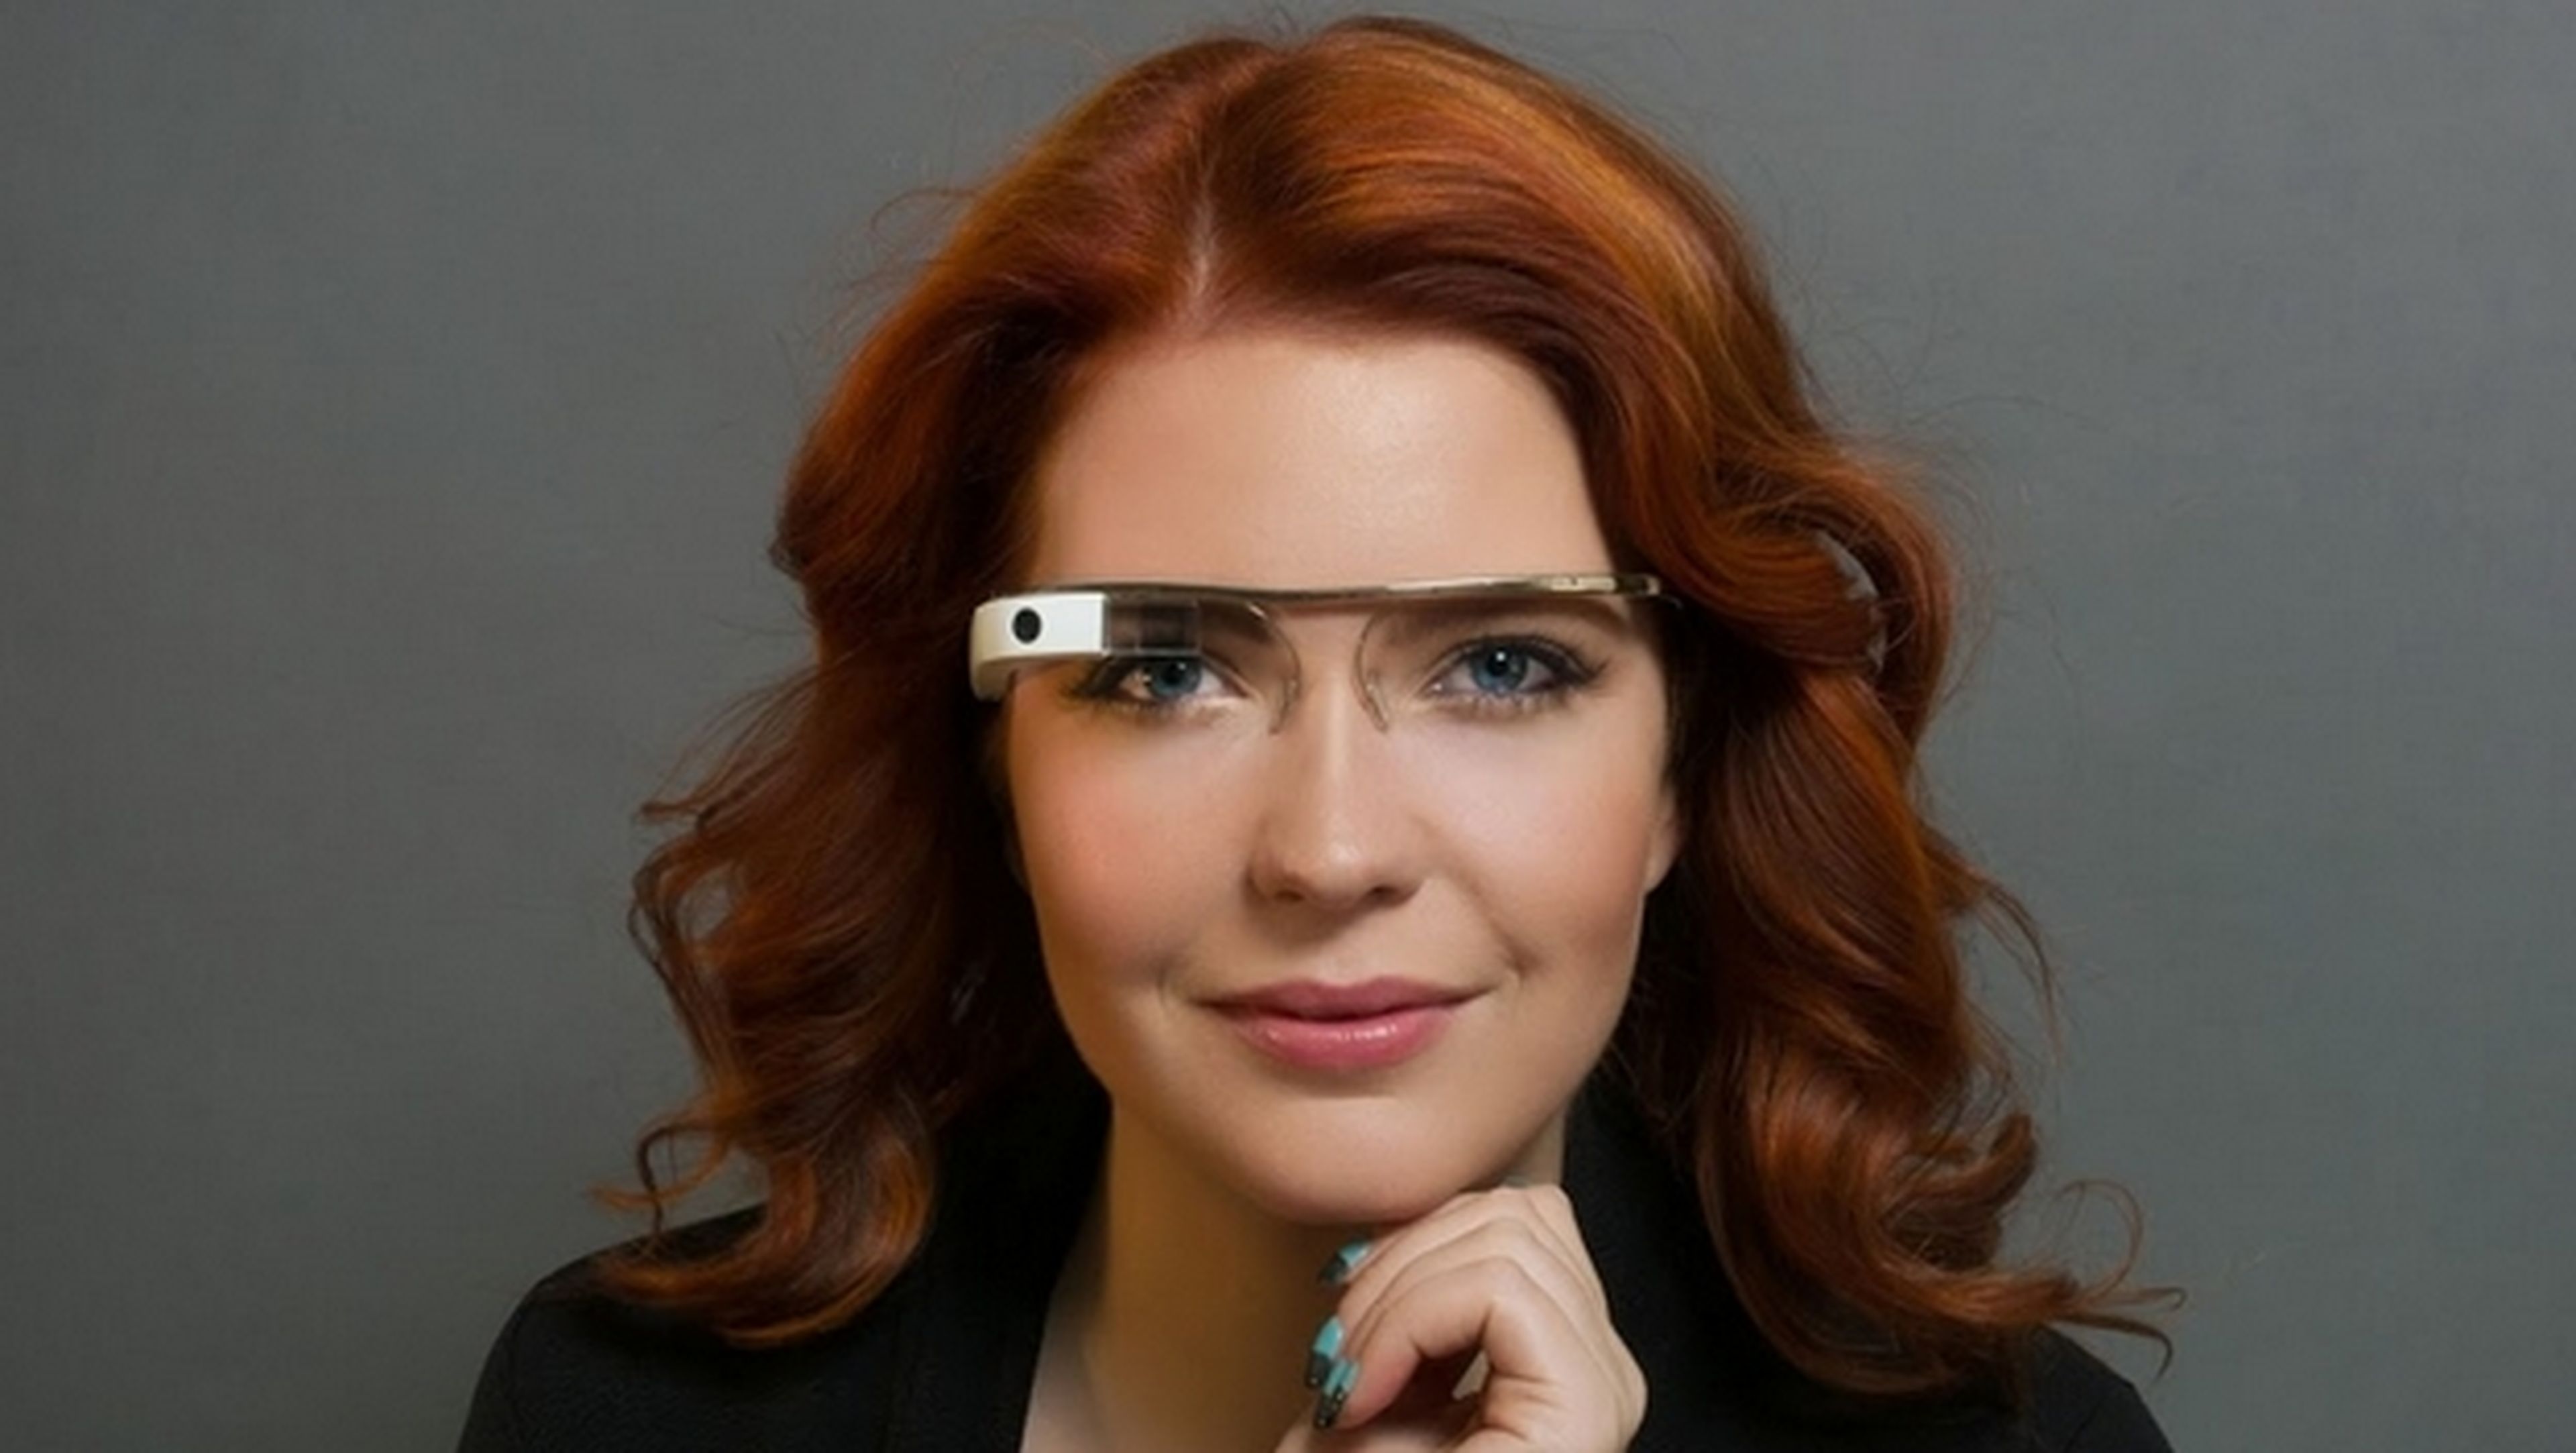 Google publicar las normas de etiqueta de Google Glass, qué hacer y qué no hacer con las gafas inteligentes